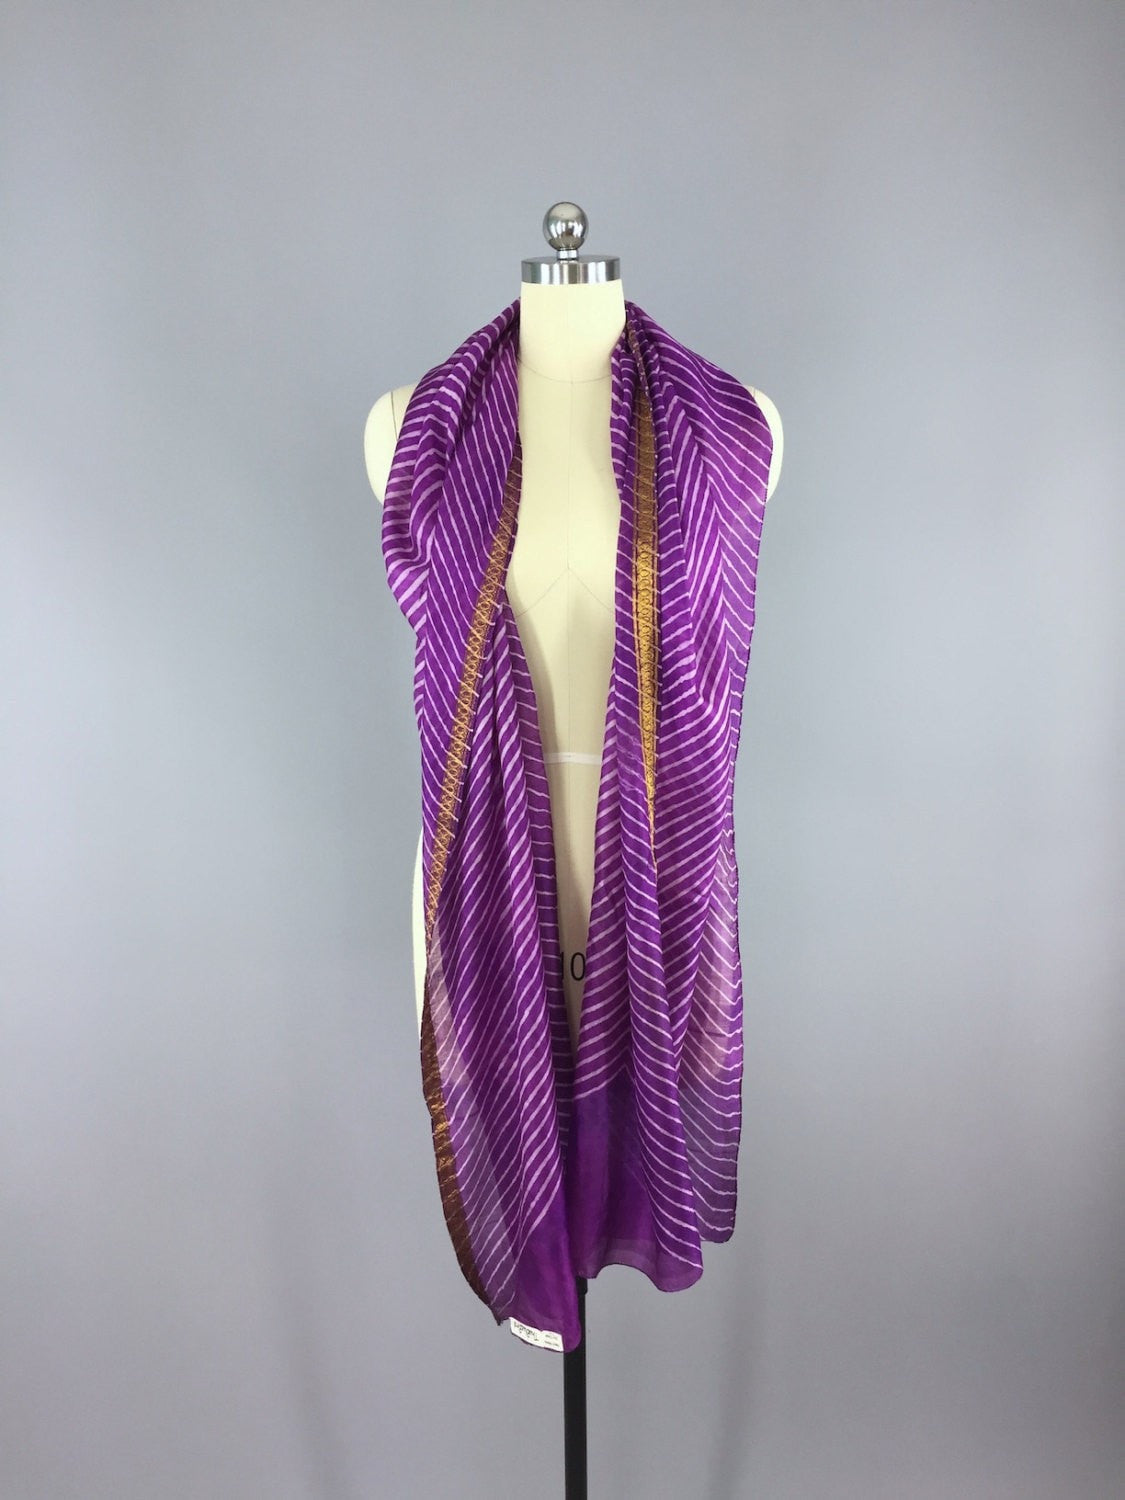 Silk Sari Scarf Wrap / Purple Chevron Stripes - ThisBlueBird